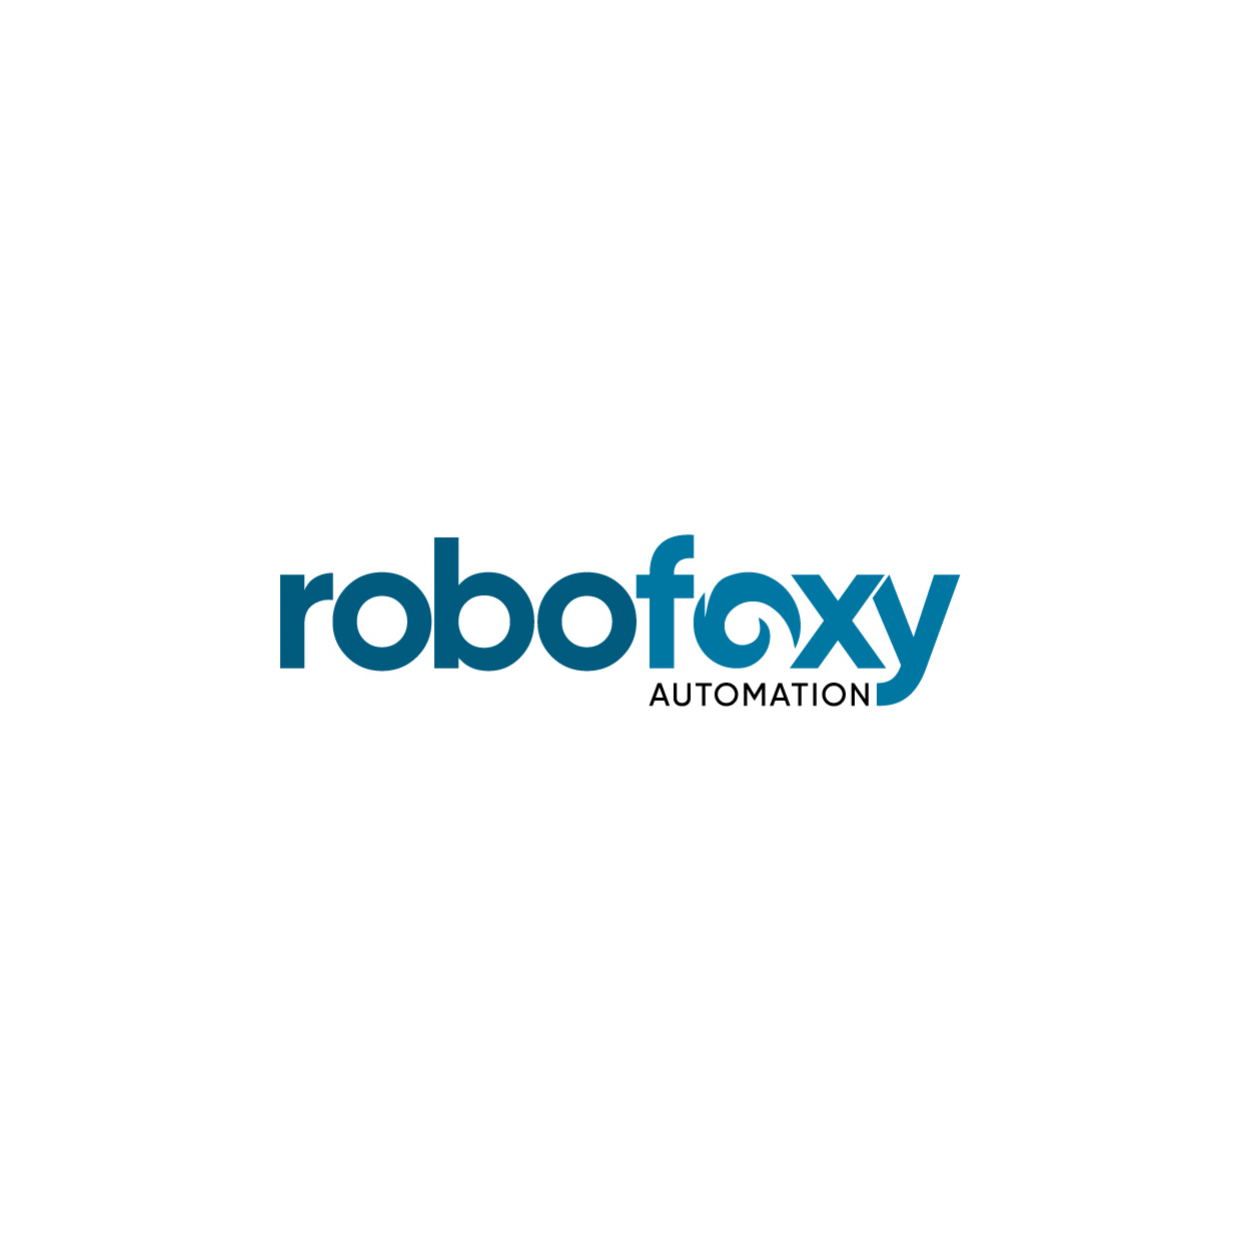 Robofoxy